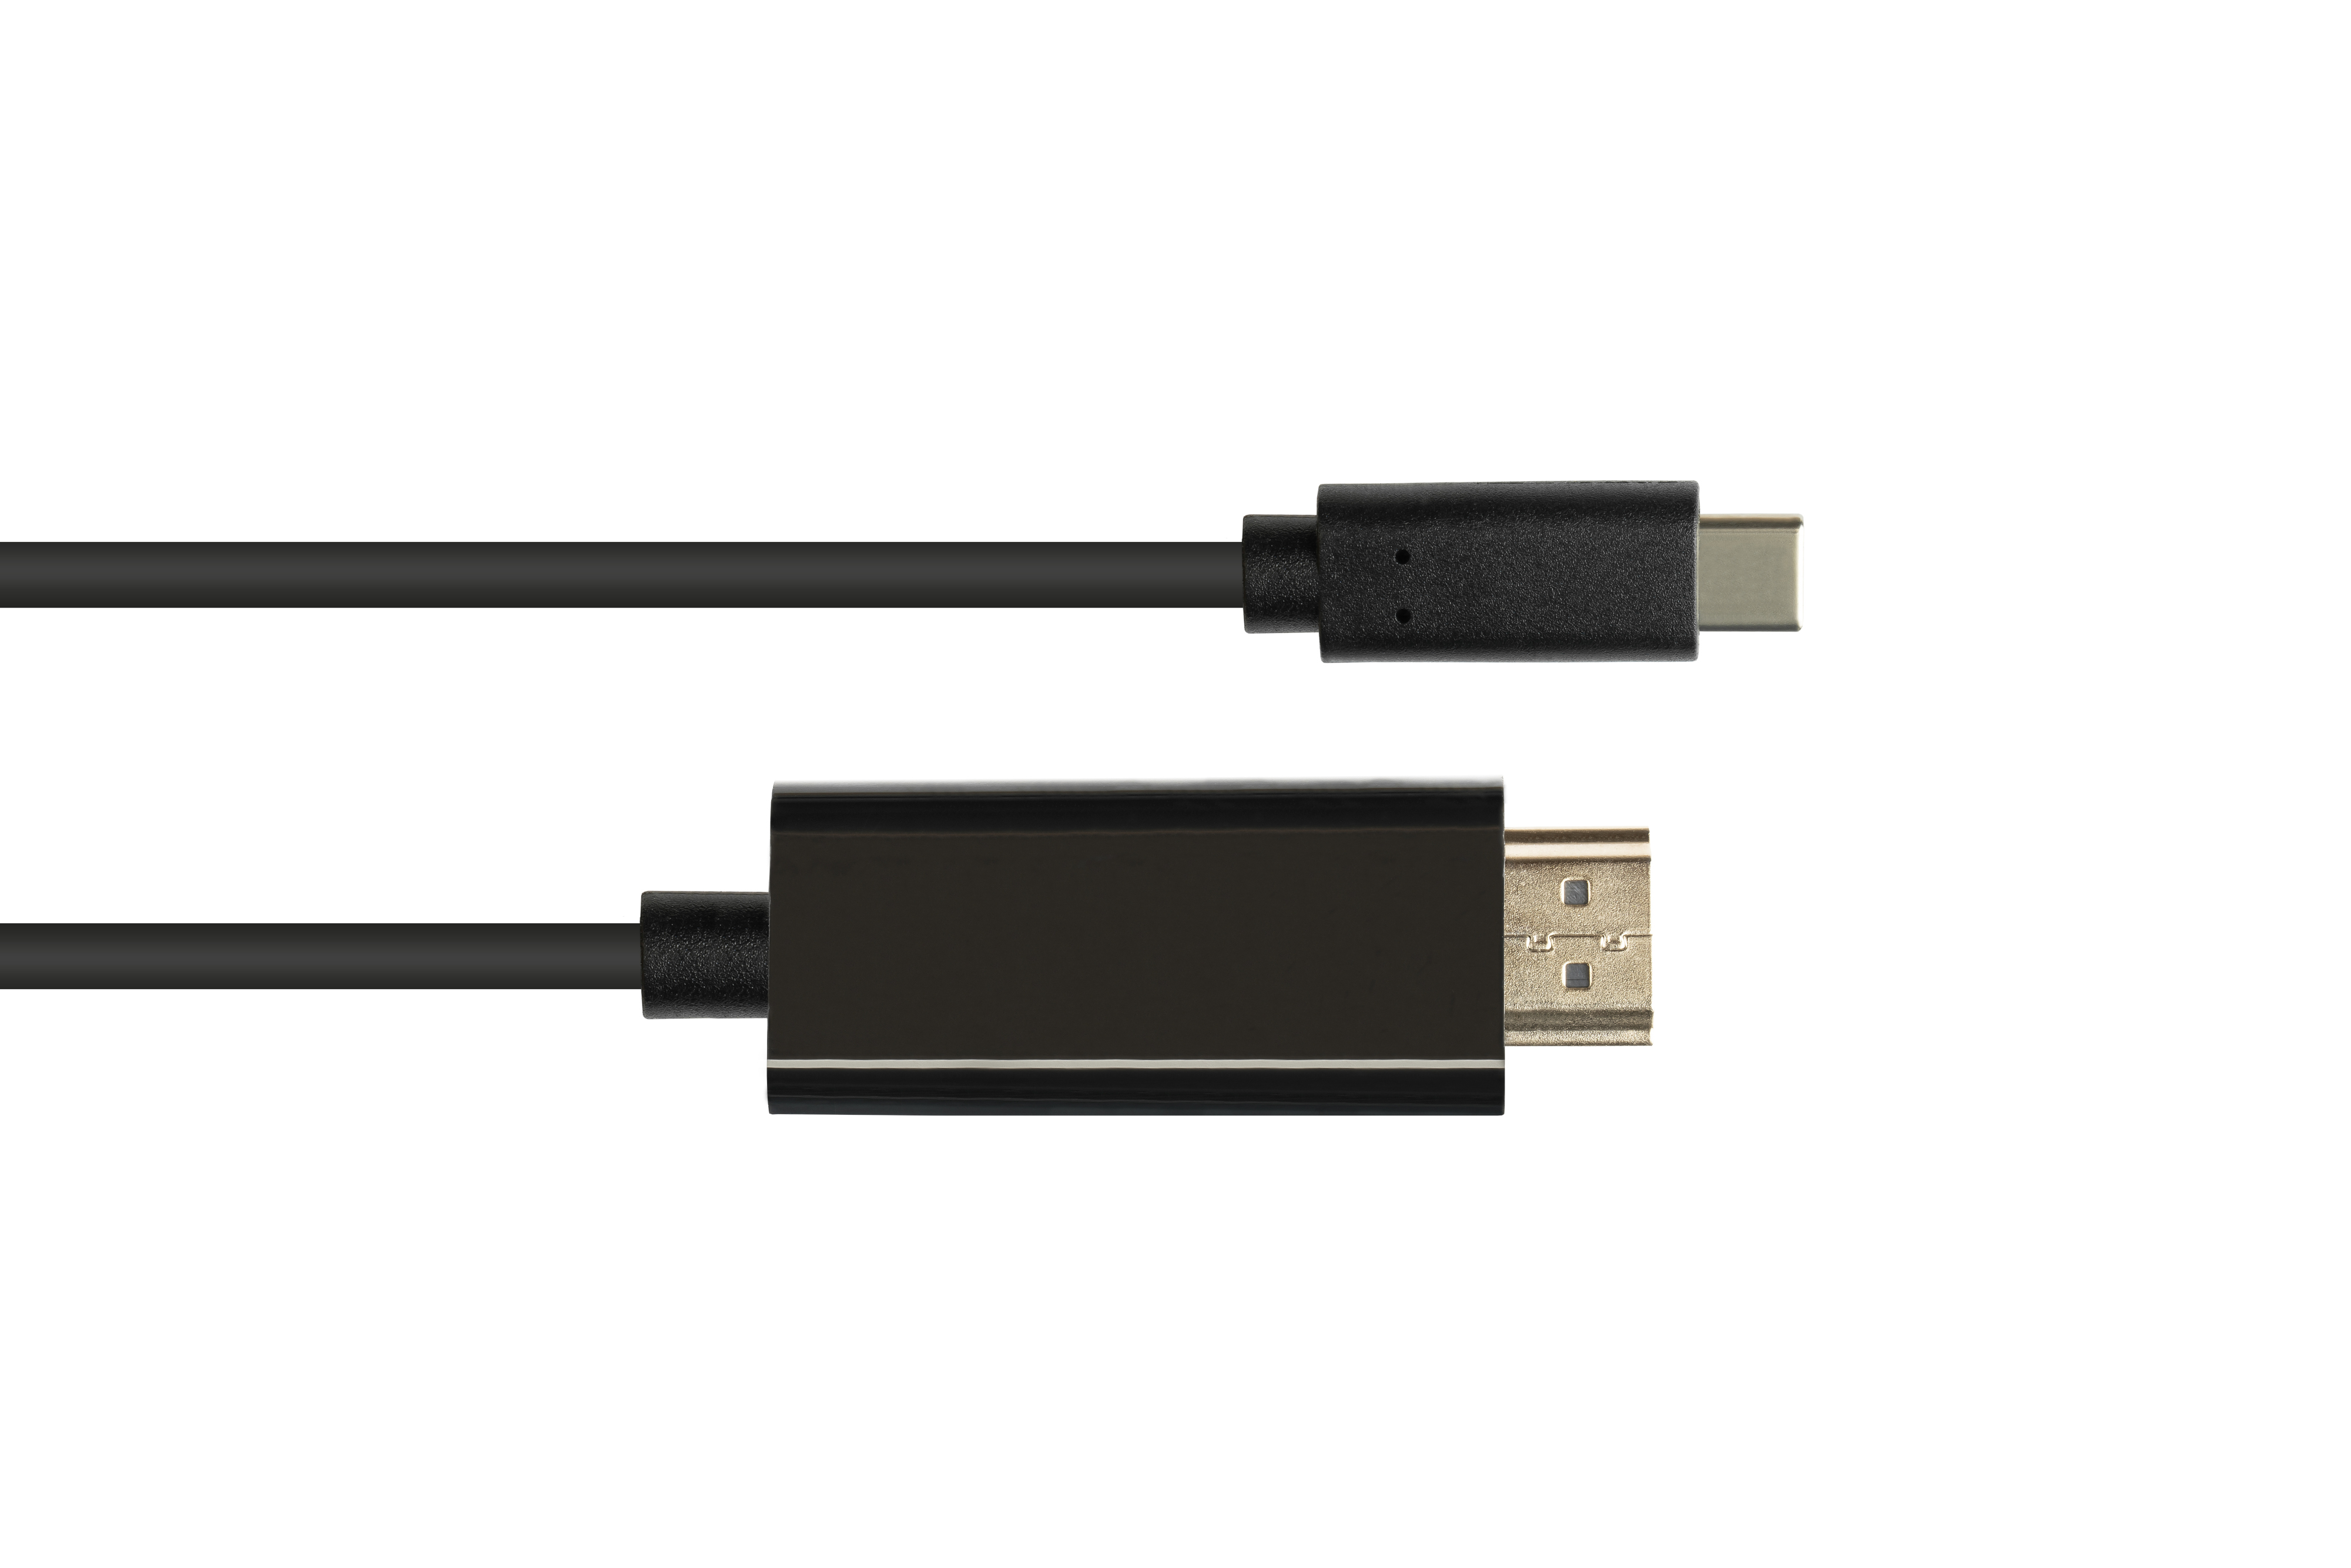 HDMI 2.0 Stecker, schwarz CU, CONNECTIONS USB-C™ GOOD UHD @60Hz, Adapterkabel Stecker / an 4K